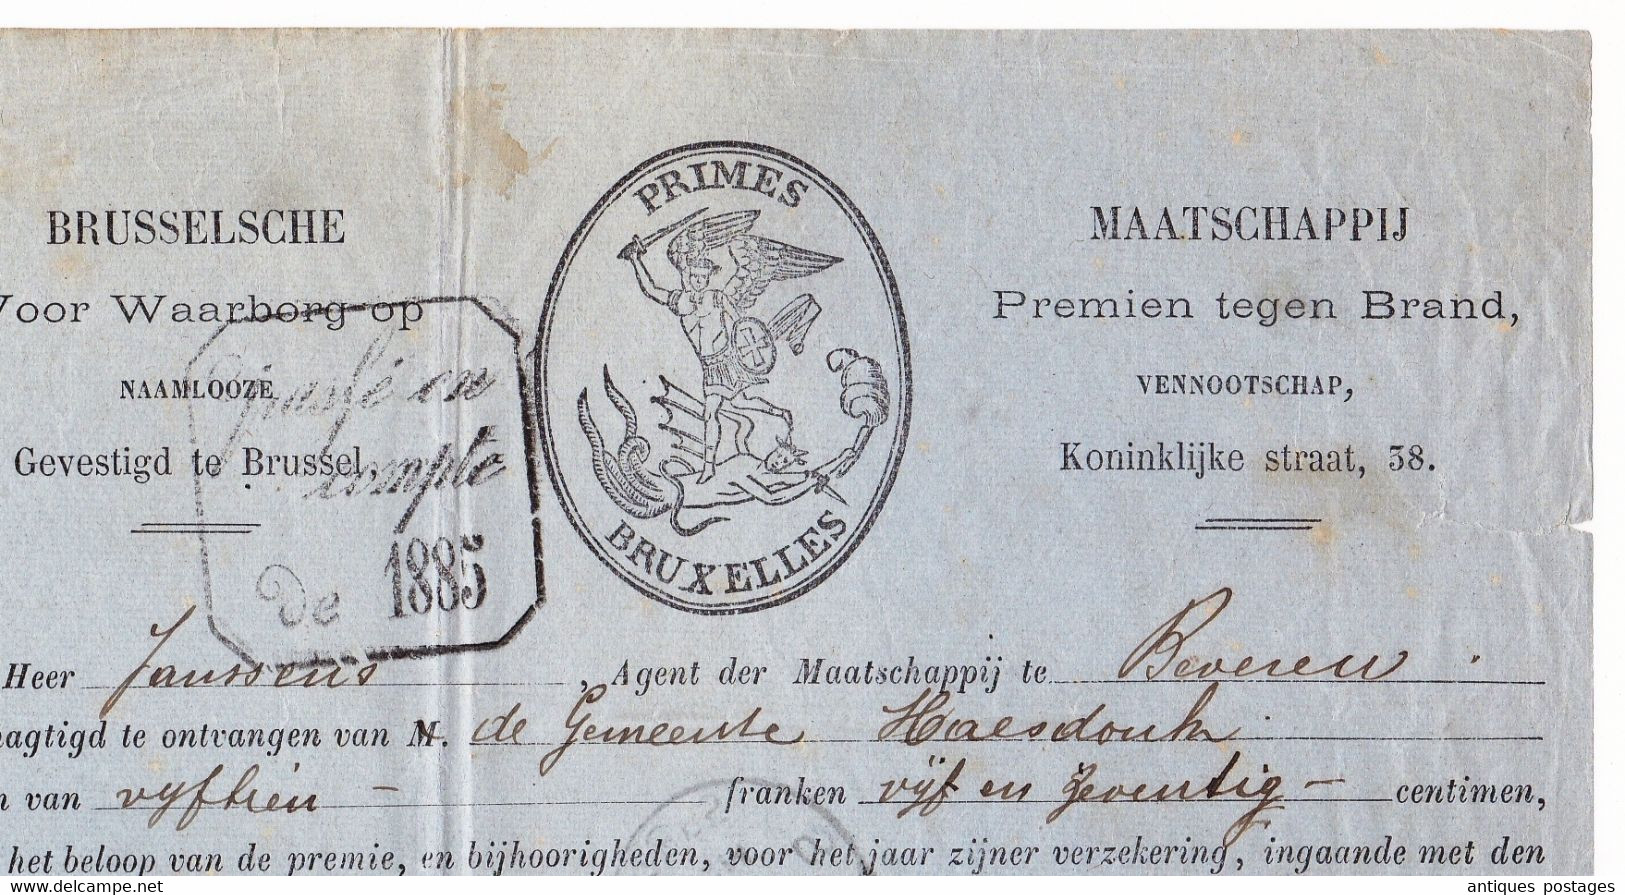 Belgique 1885 Primes Bruxelles Saint-Nicolas Beveren Maatschappij Premien Tegen Brand - 1883 Leopoldo II